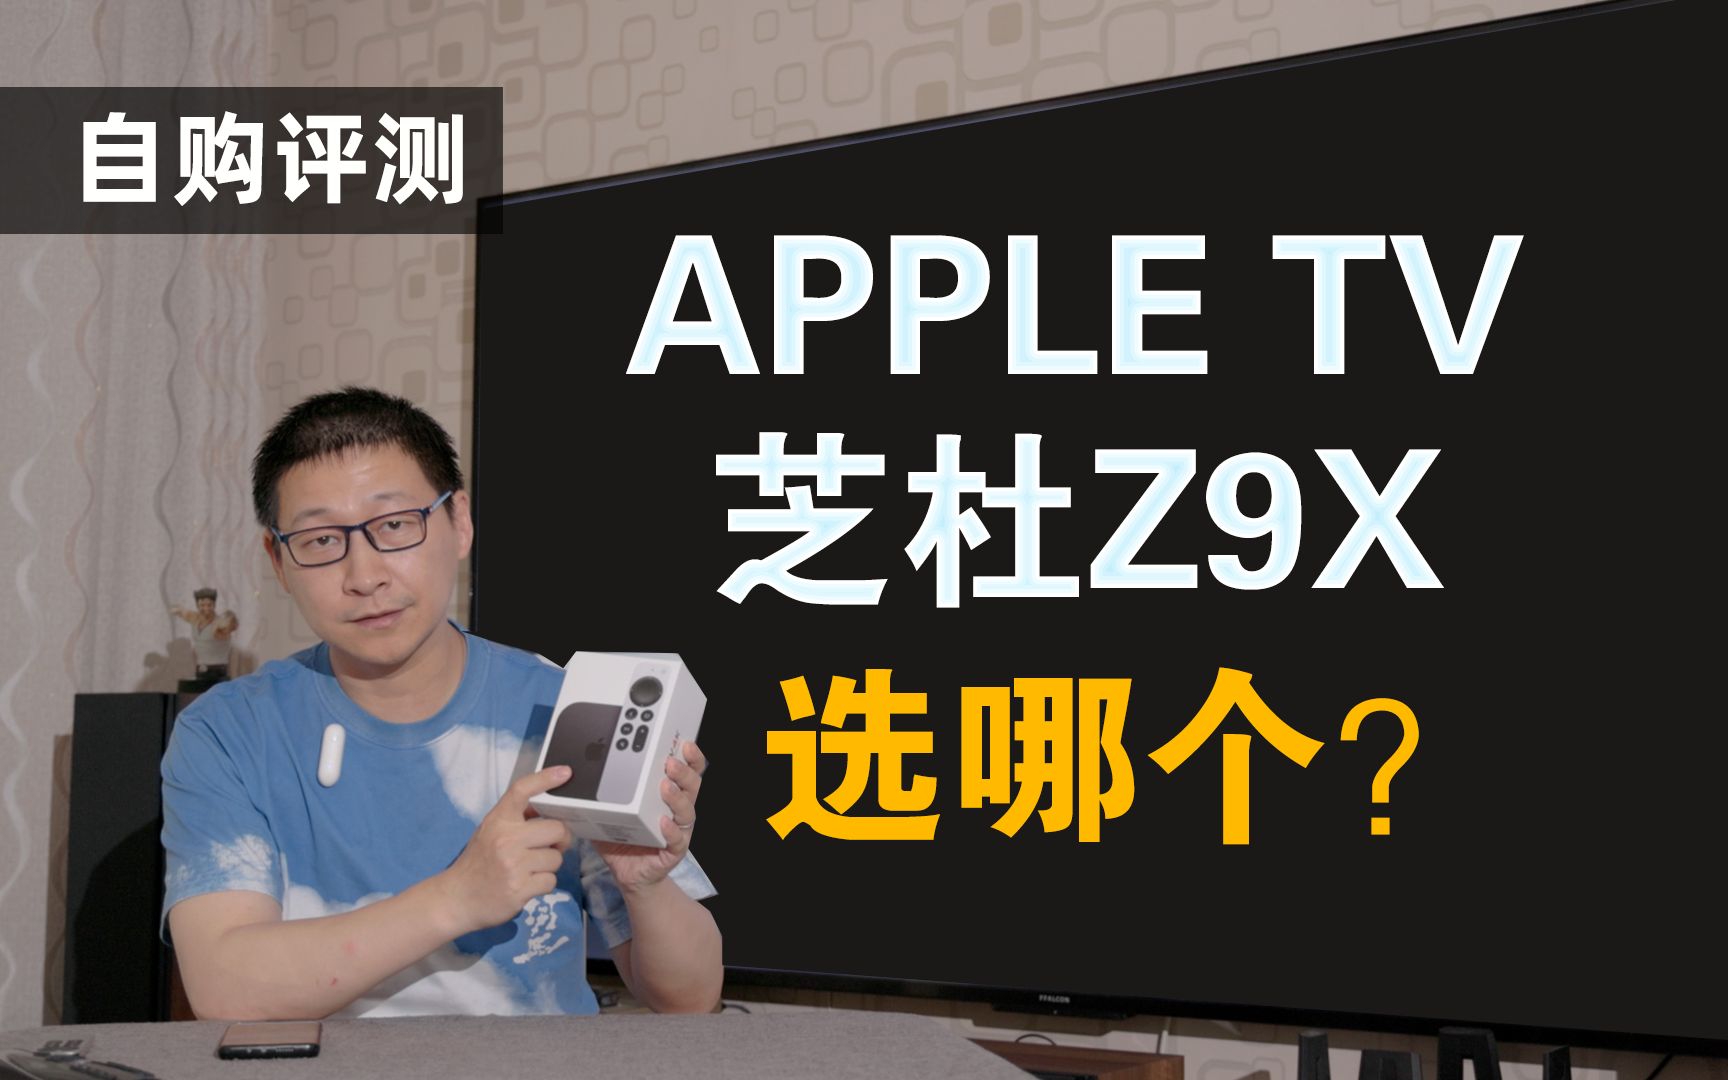 千元预算选APPLE TV还是芝杜Z9X？零基础 无魔法也能搞定4K播放。